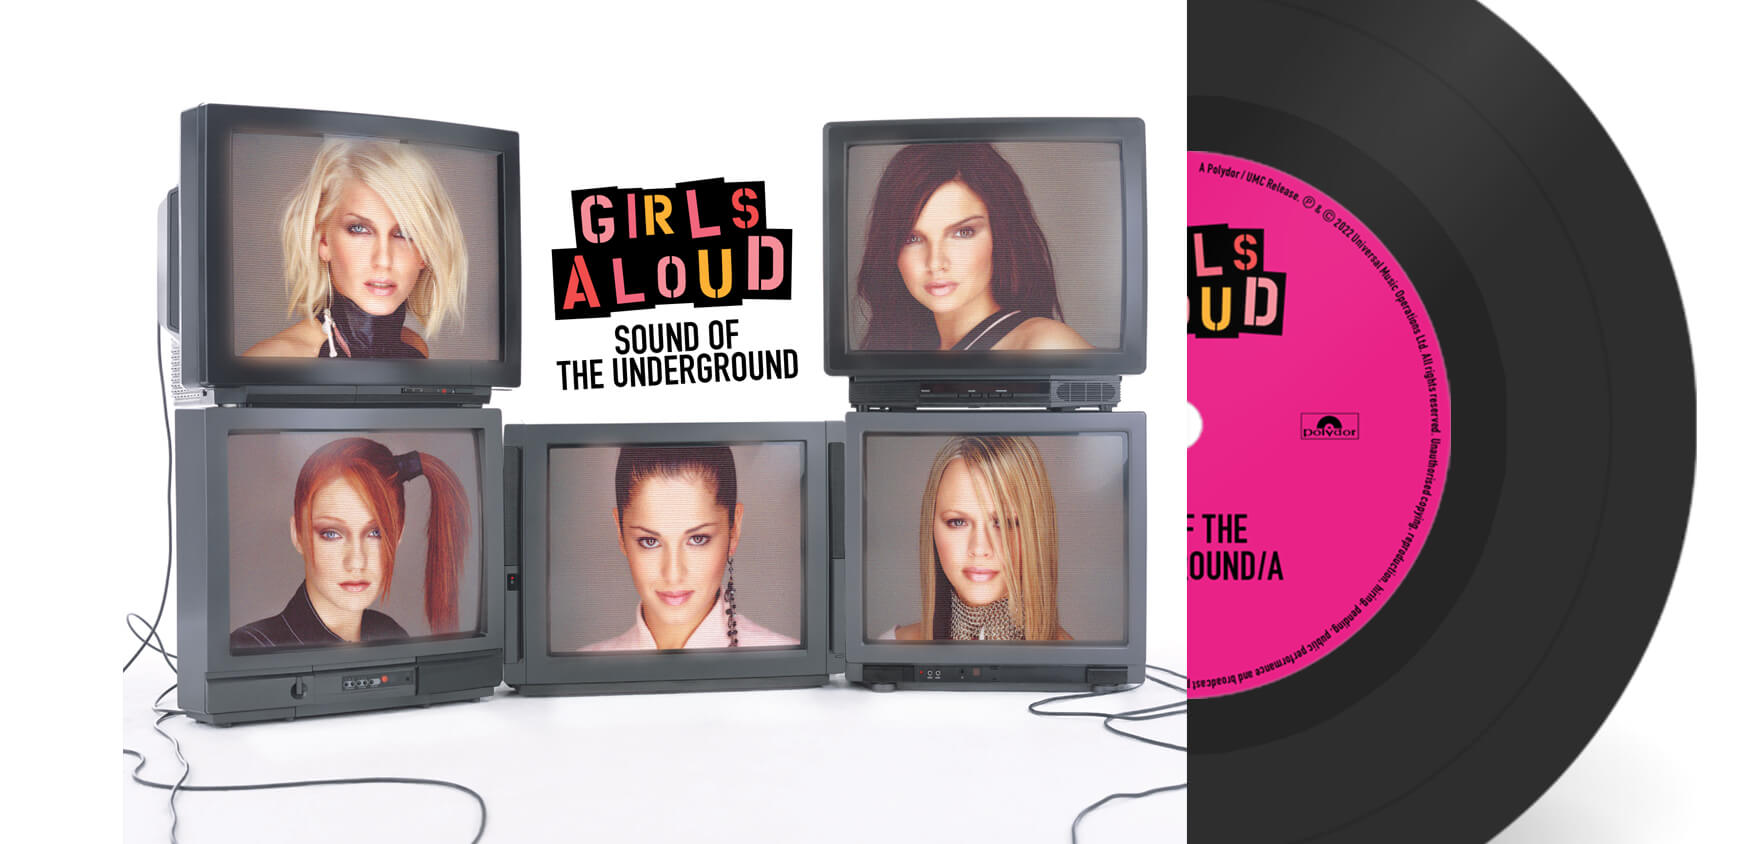 Girls Aloud Sound of the Underground 7" Vinyl